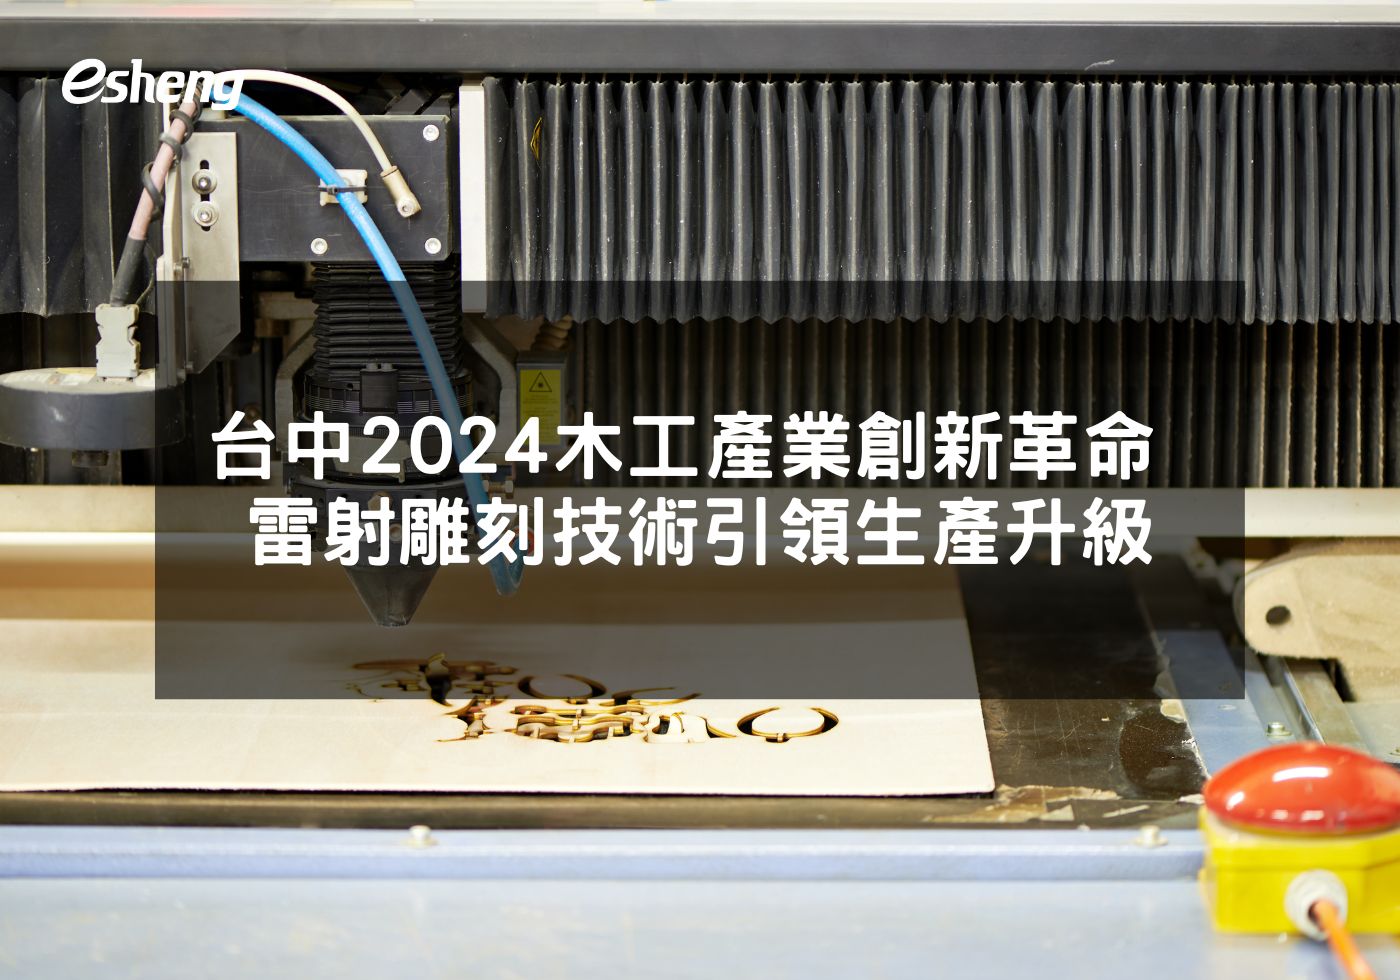 台中2024木工產業創新革命 雷射雕刻技術引領生產升級